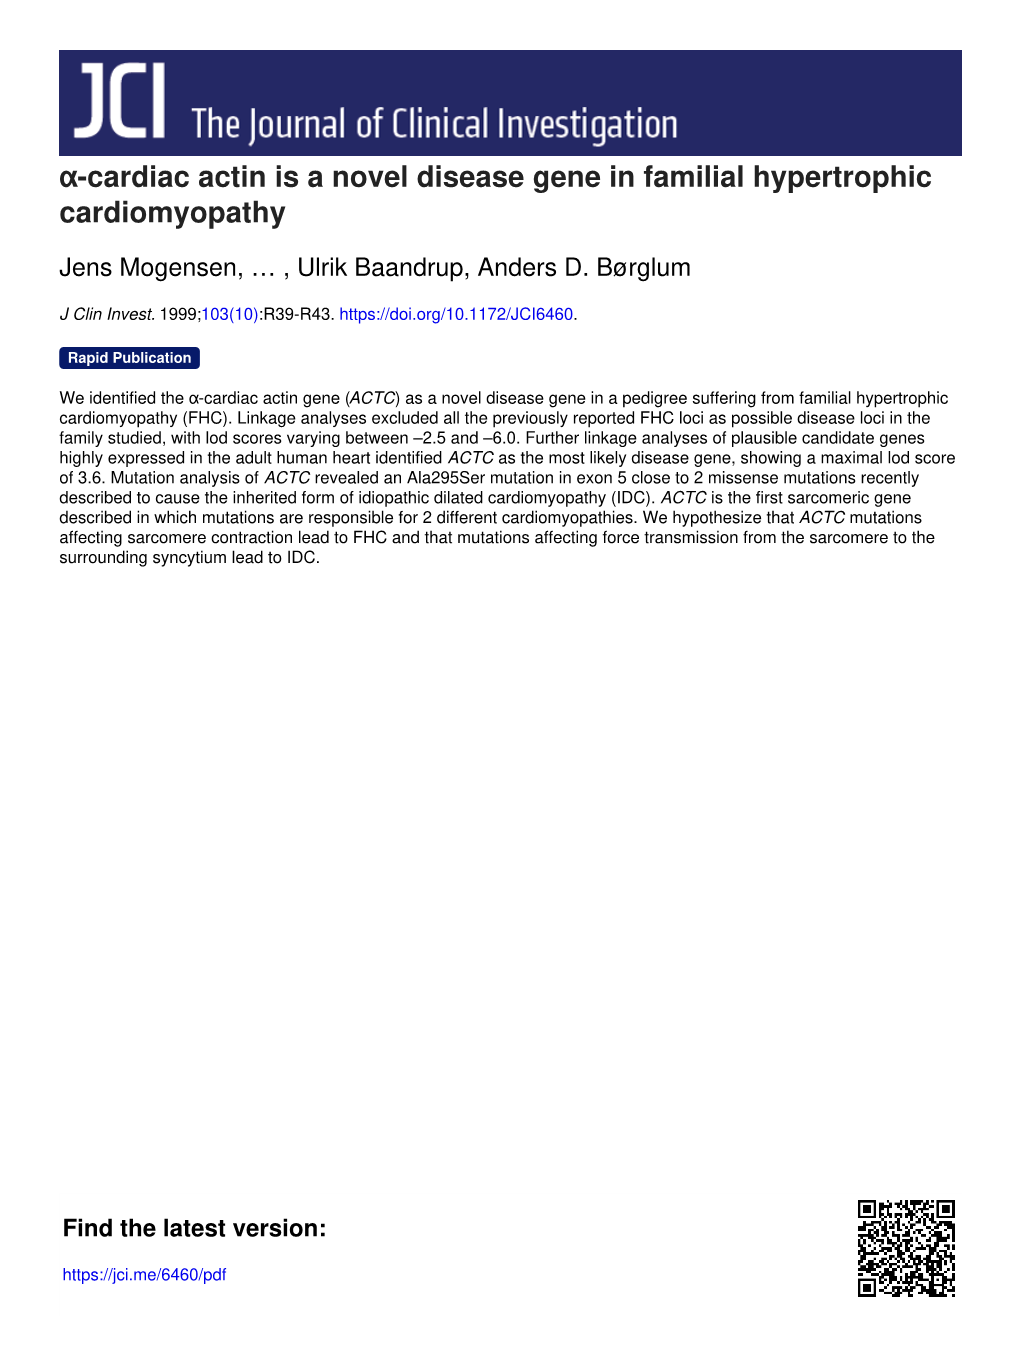 Α-Cardiac Actin Is a Novel Disease Gene in Familial Hypertrophic Cardiomyopathy